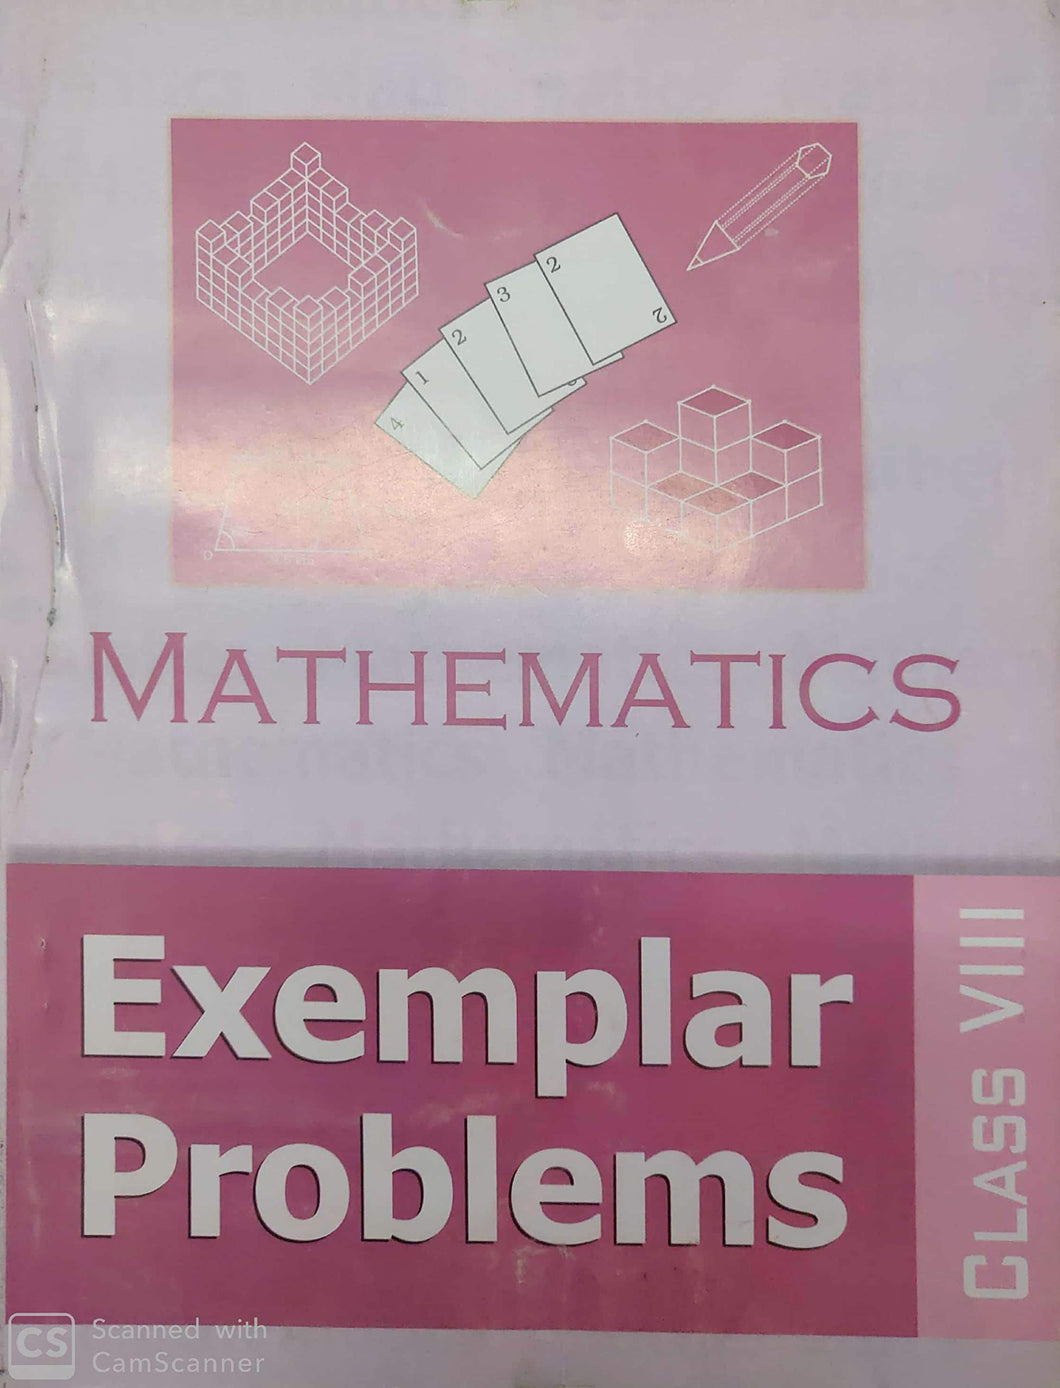 NCERT Mathematics Exemplar Problem for Class 8 - latest edition as per NCERT/CBSE - Booksfy